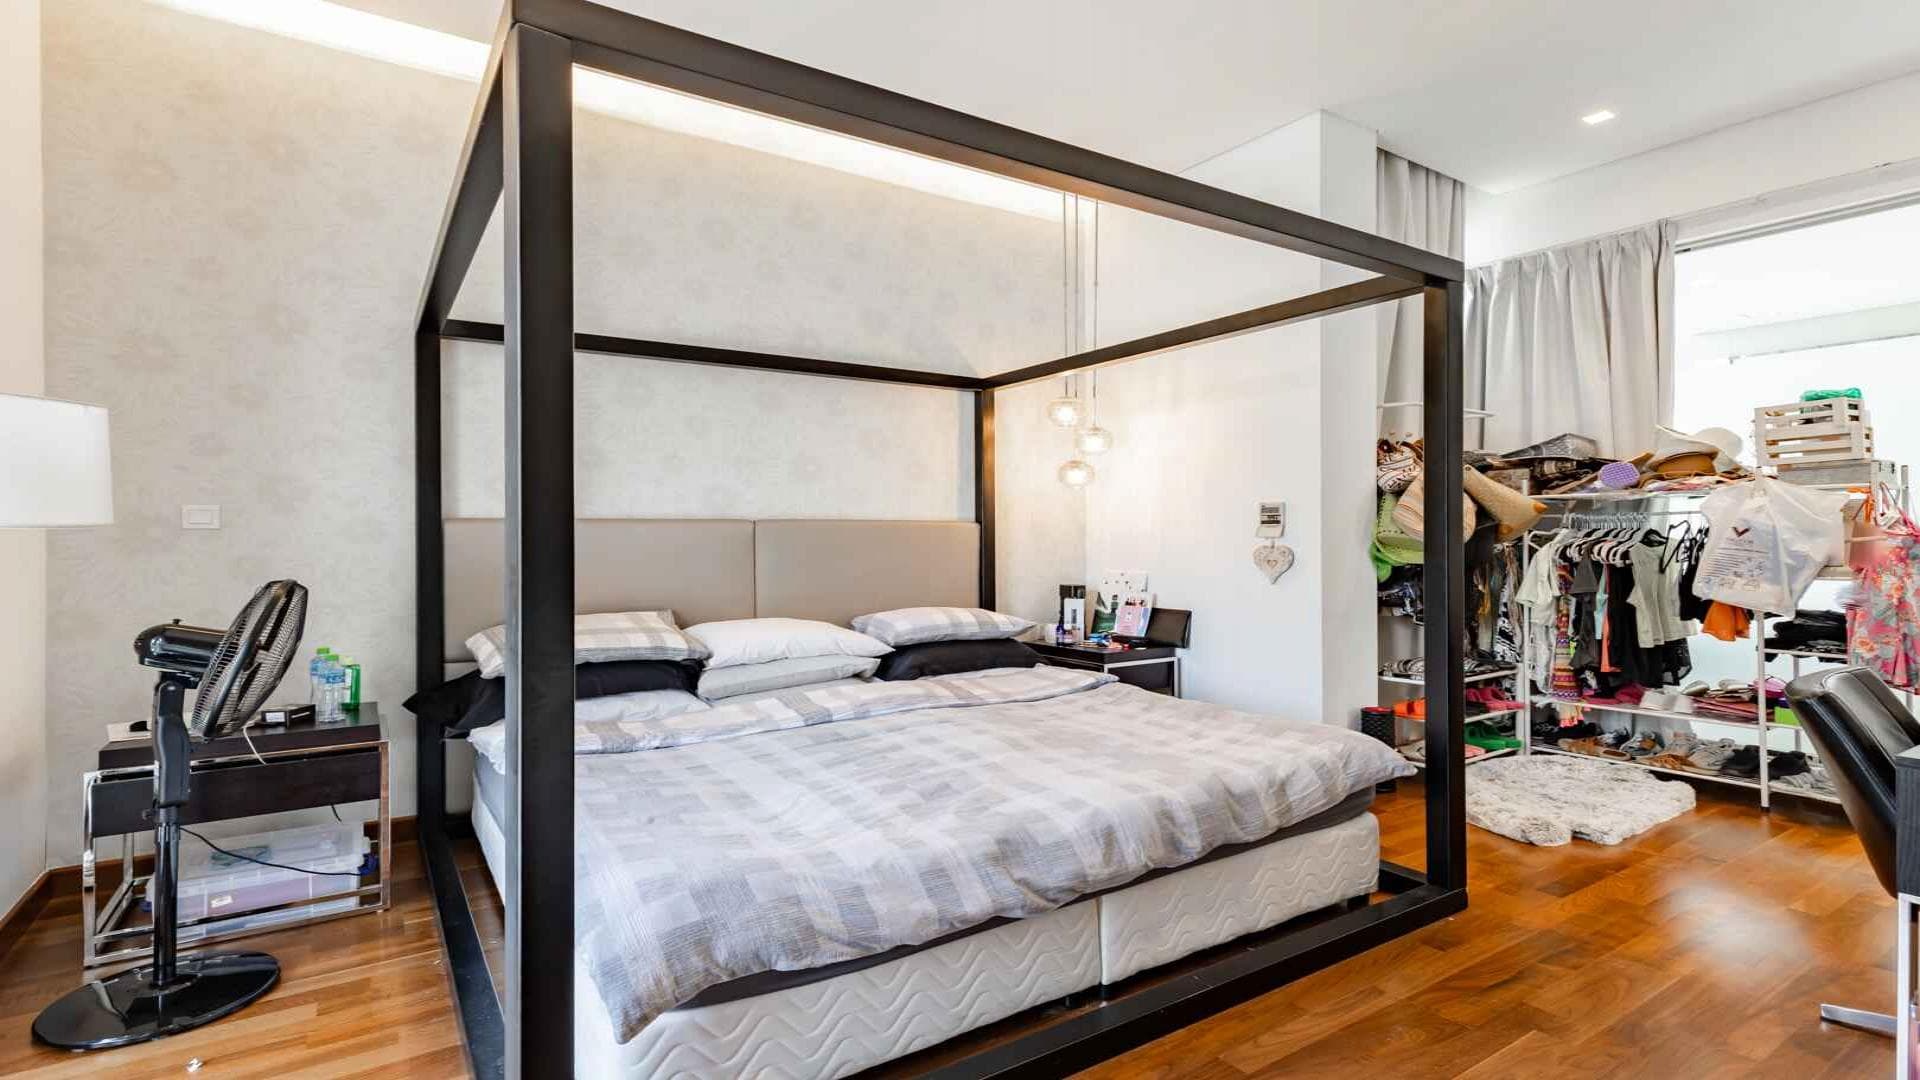 5 Bedroom Villa For Rent Tasameem Tower 1 Lp37388 2ee0749897f5ca00.jpg